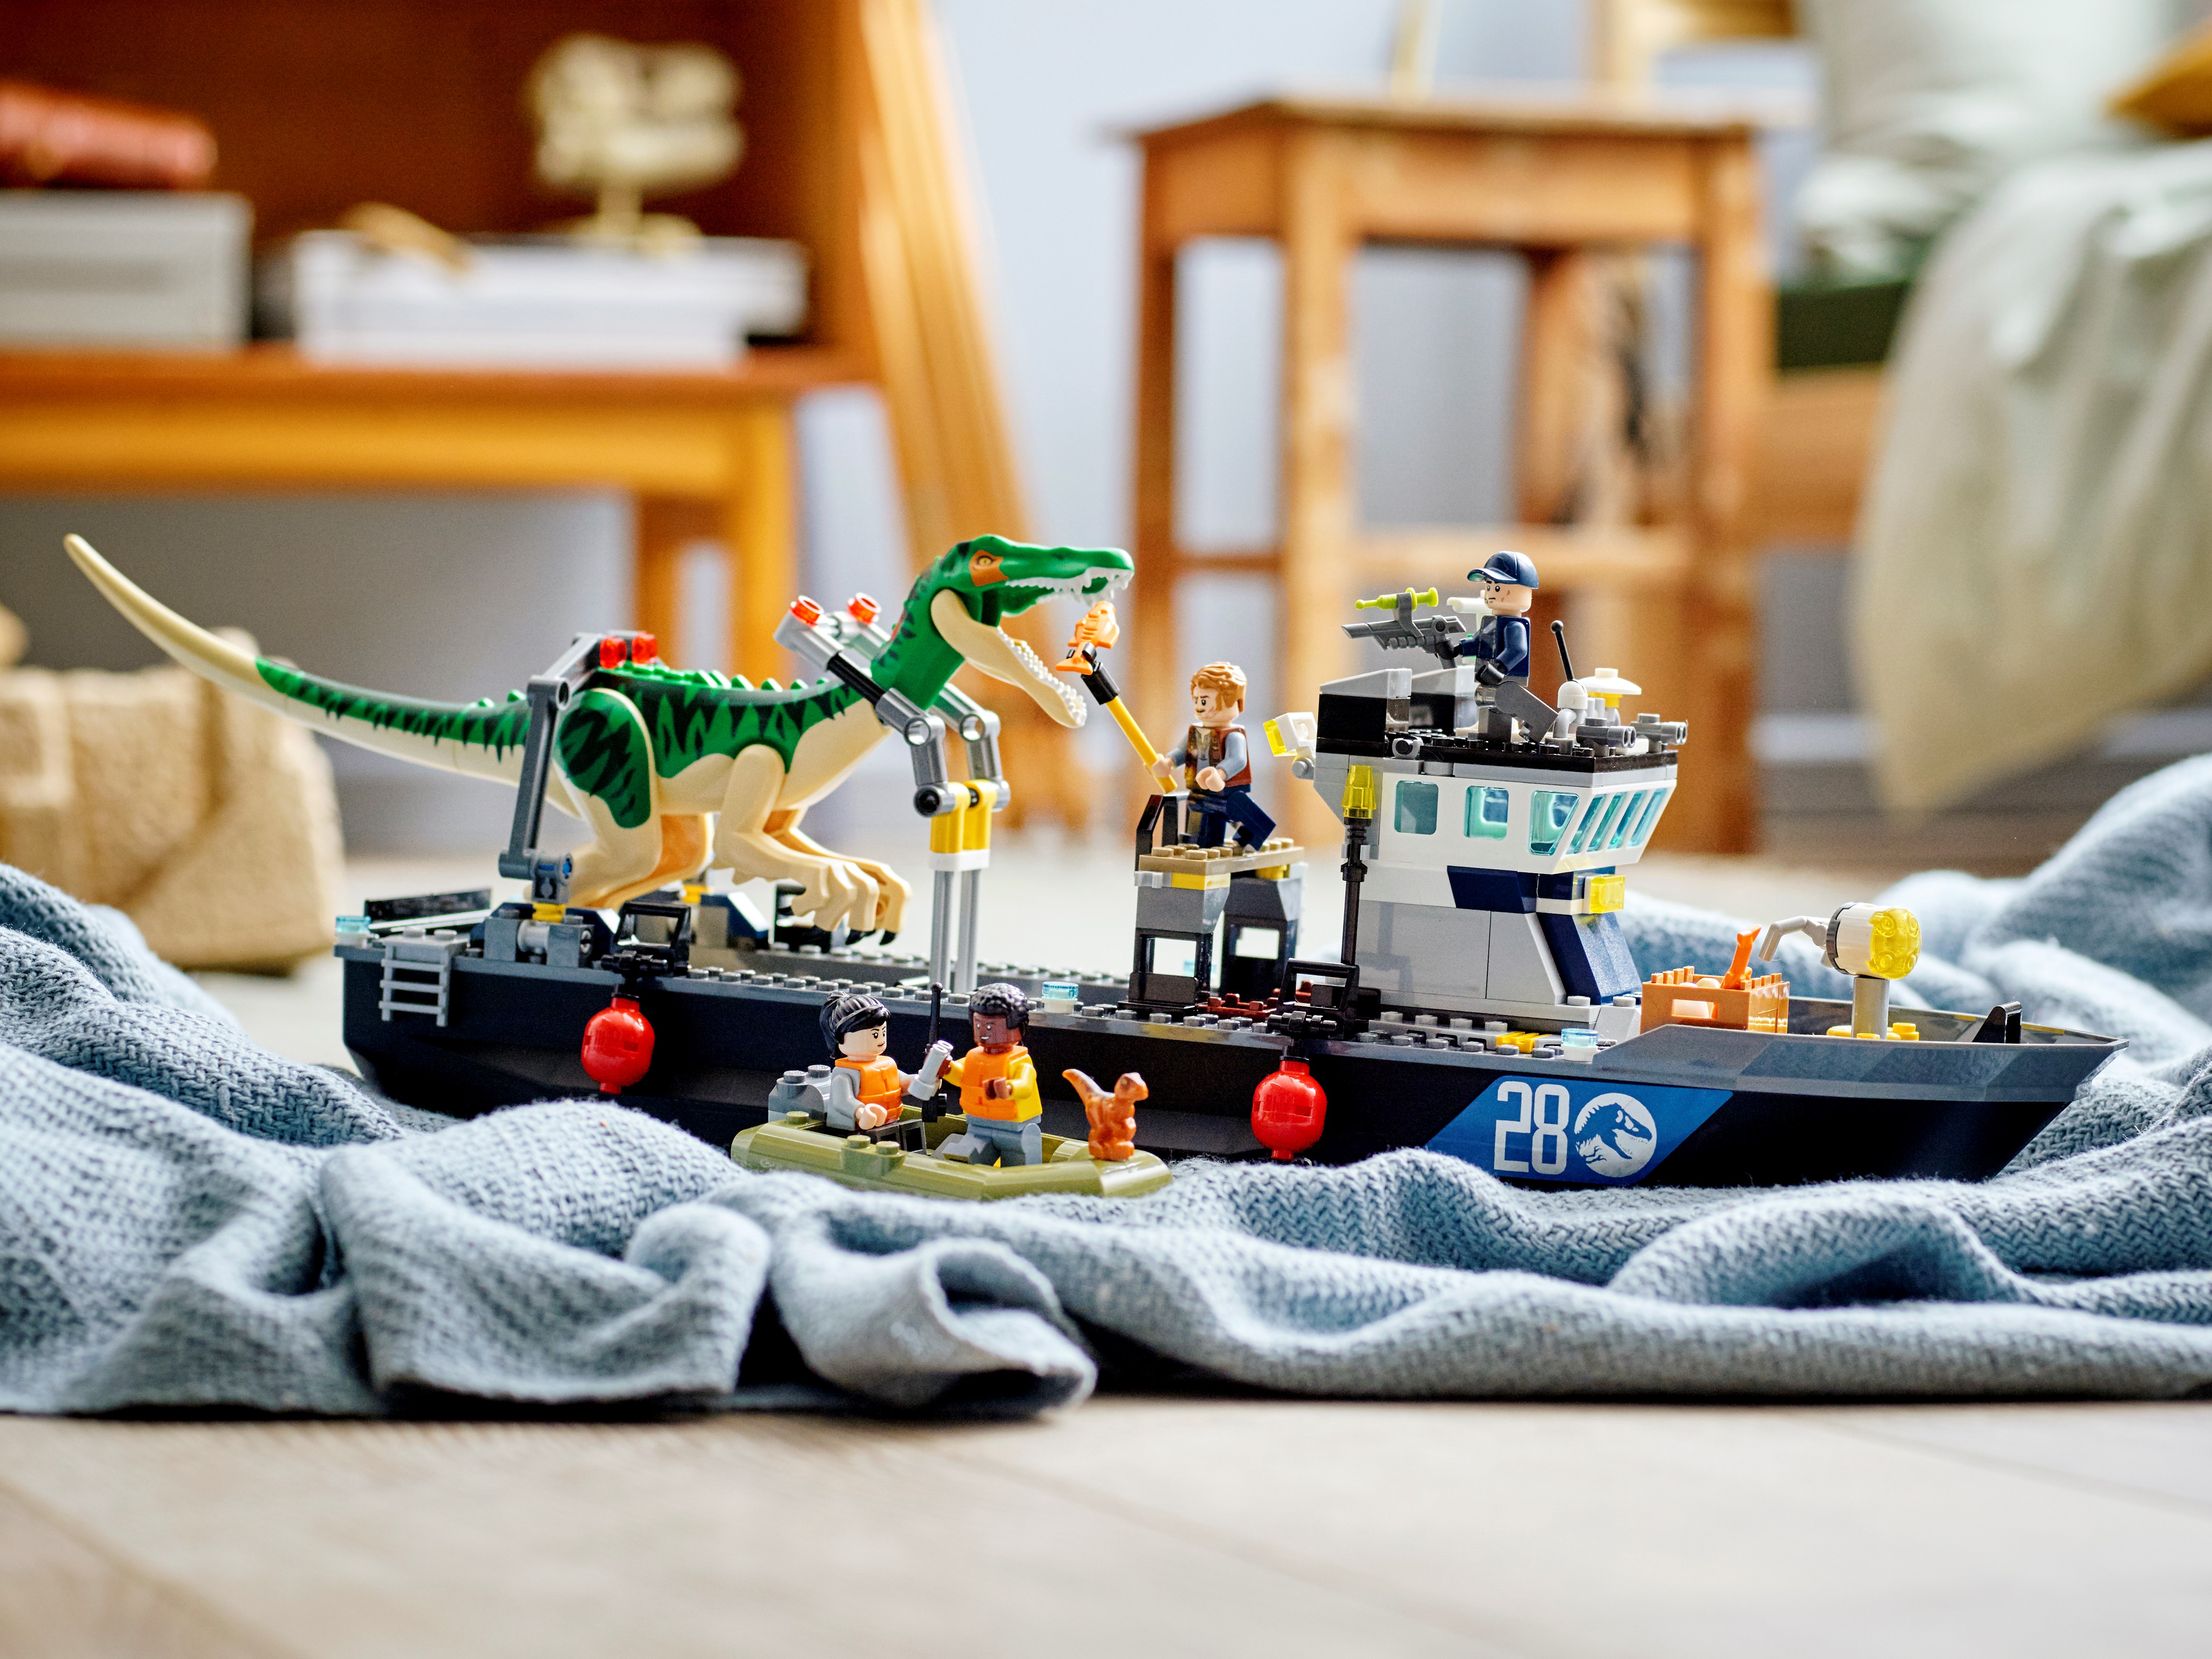 LEGO® Jurassic World™ 76942 L'évasion en bateau du Baryonyx - Lego